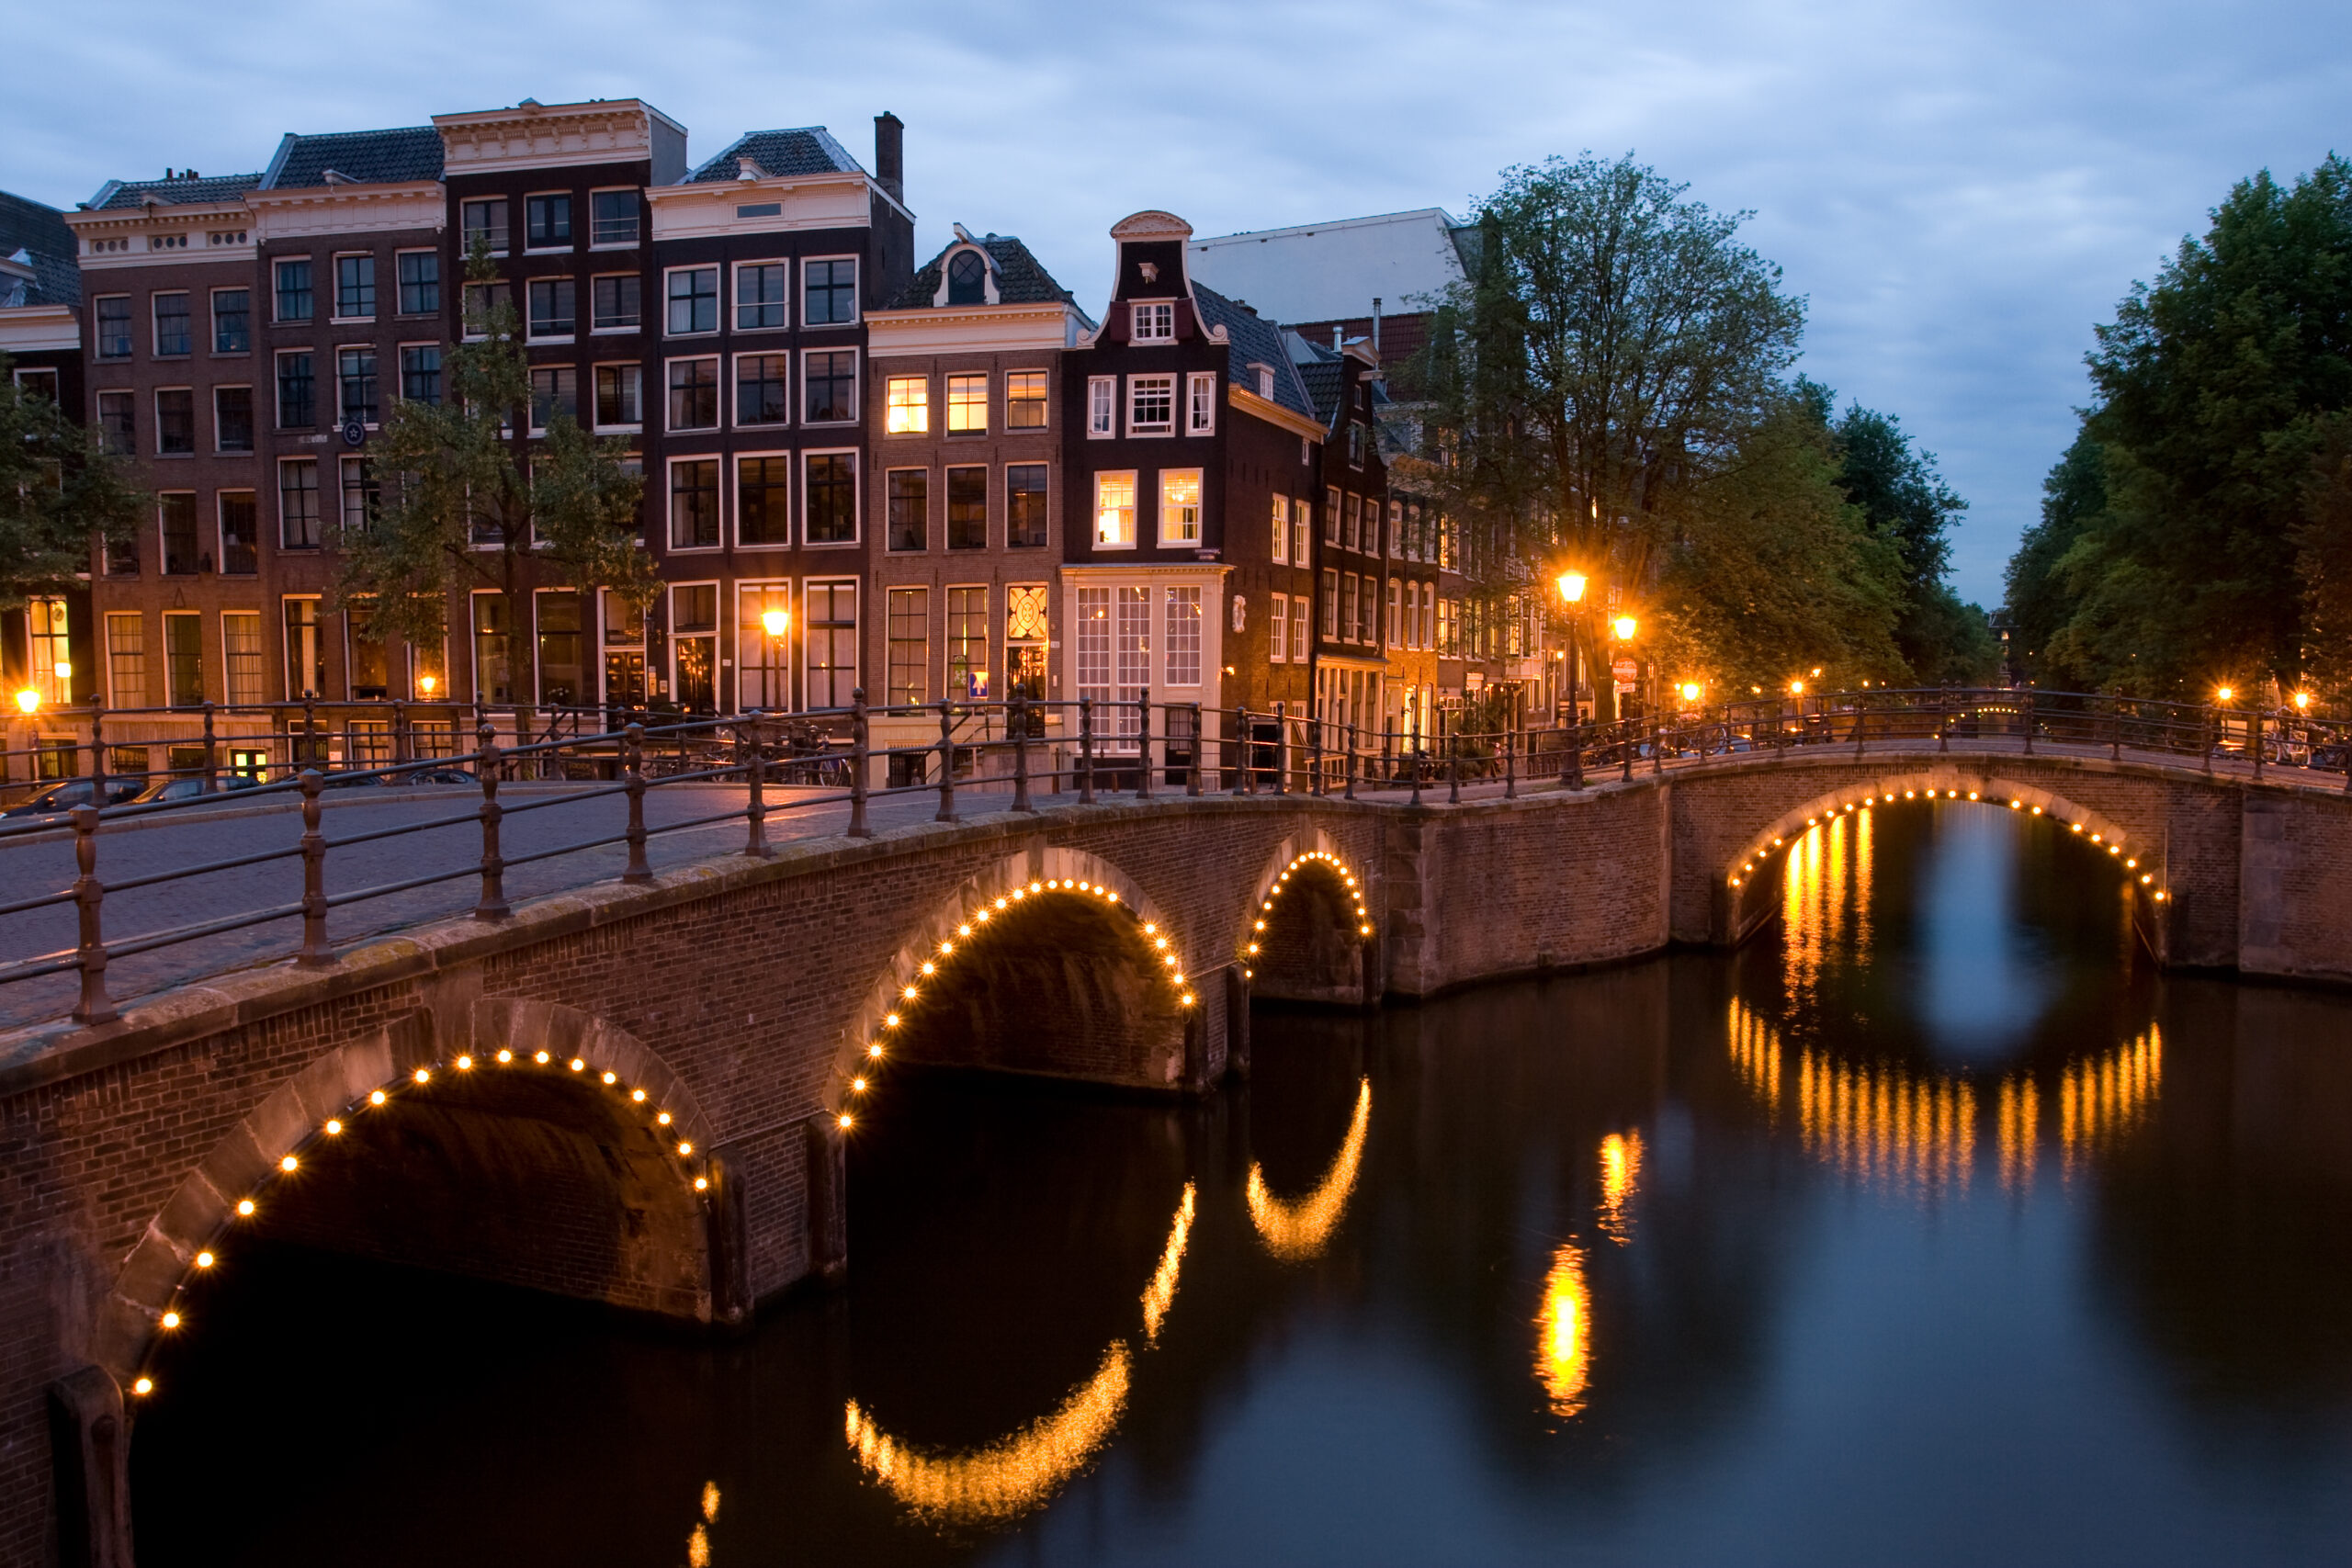 Khái quát về thủ đô Amsterdam